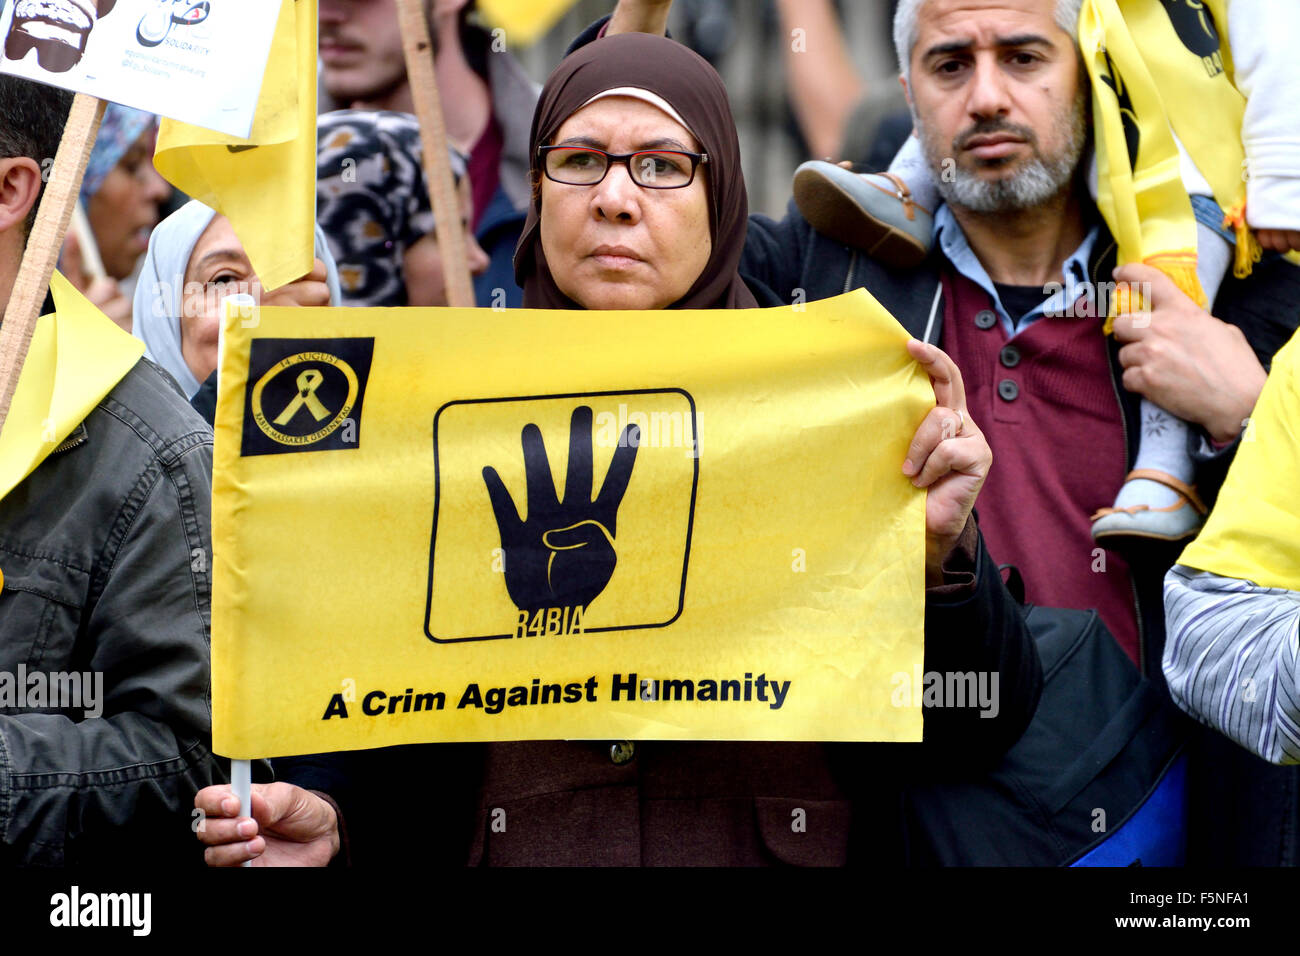 Errore di ortografia su un banner - "Il crim" invece di "crimine" - prodotta da una organizzazione tedesca per i dimostranti egiziani.... Foto Stock